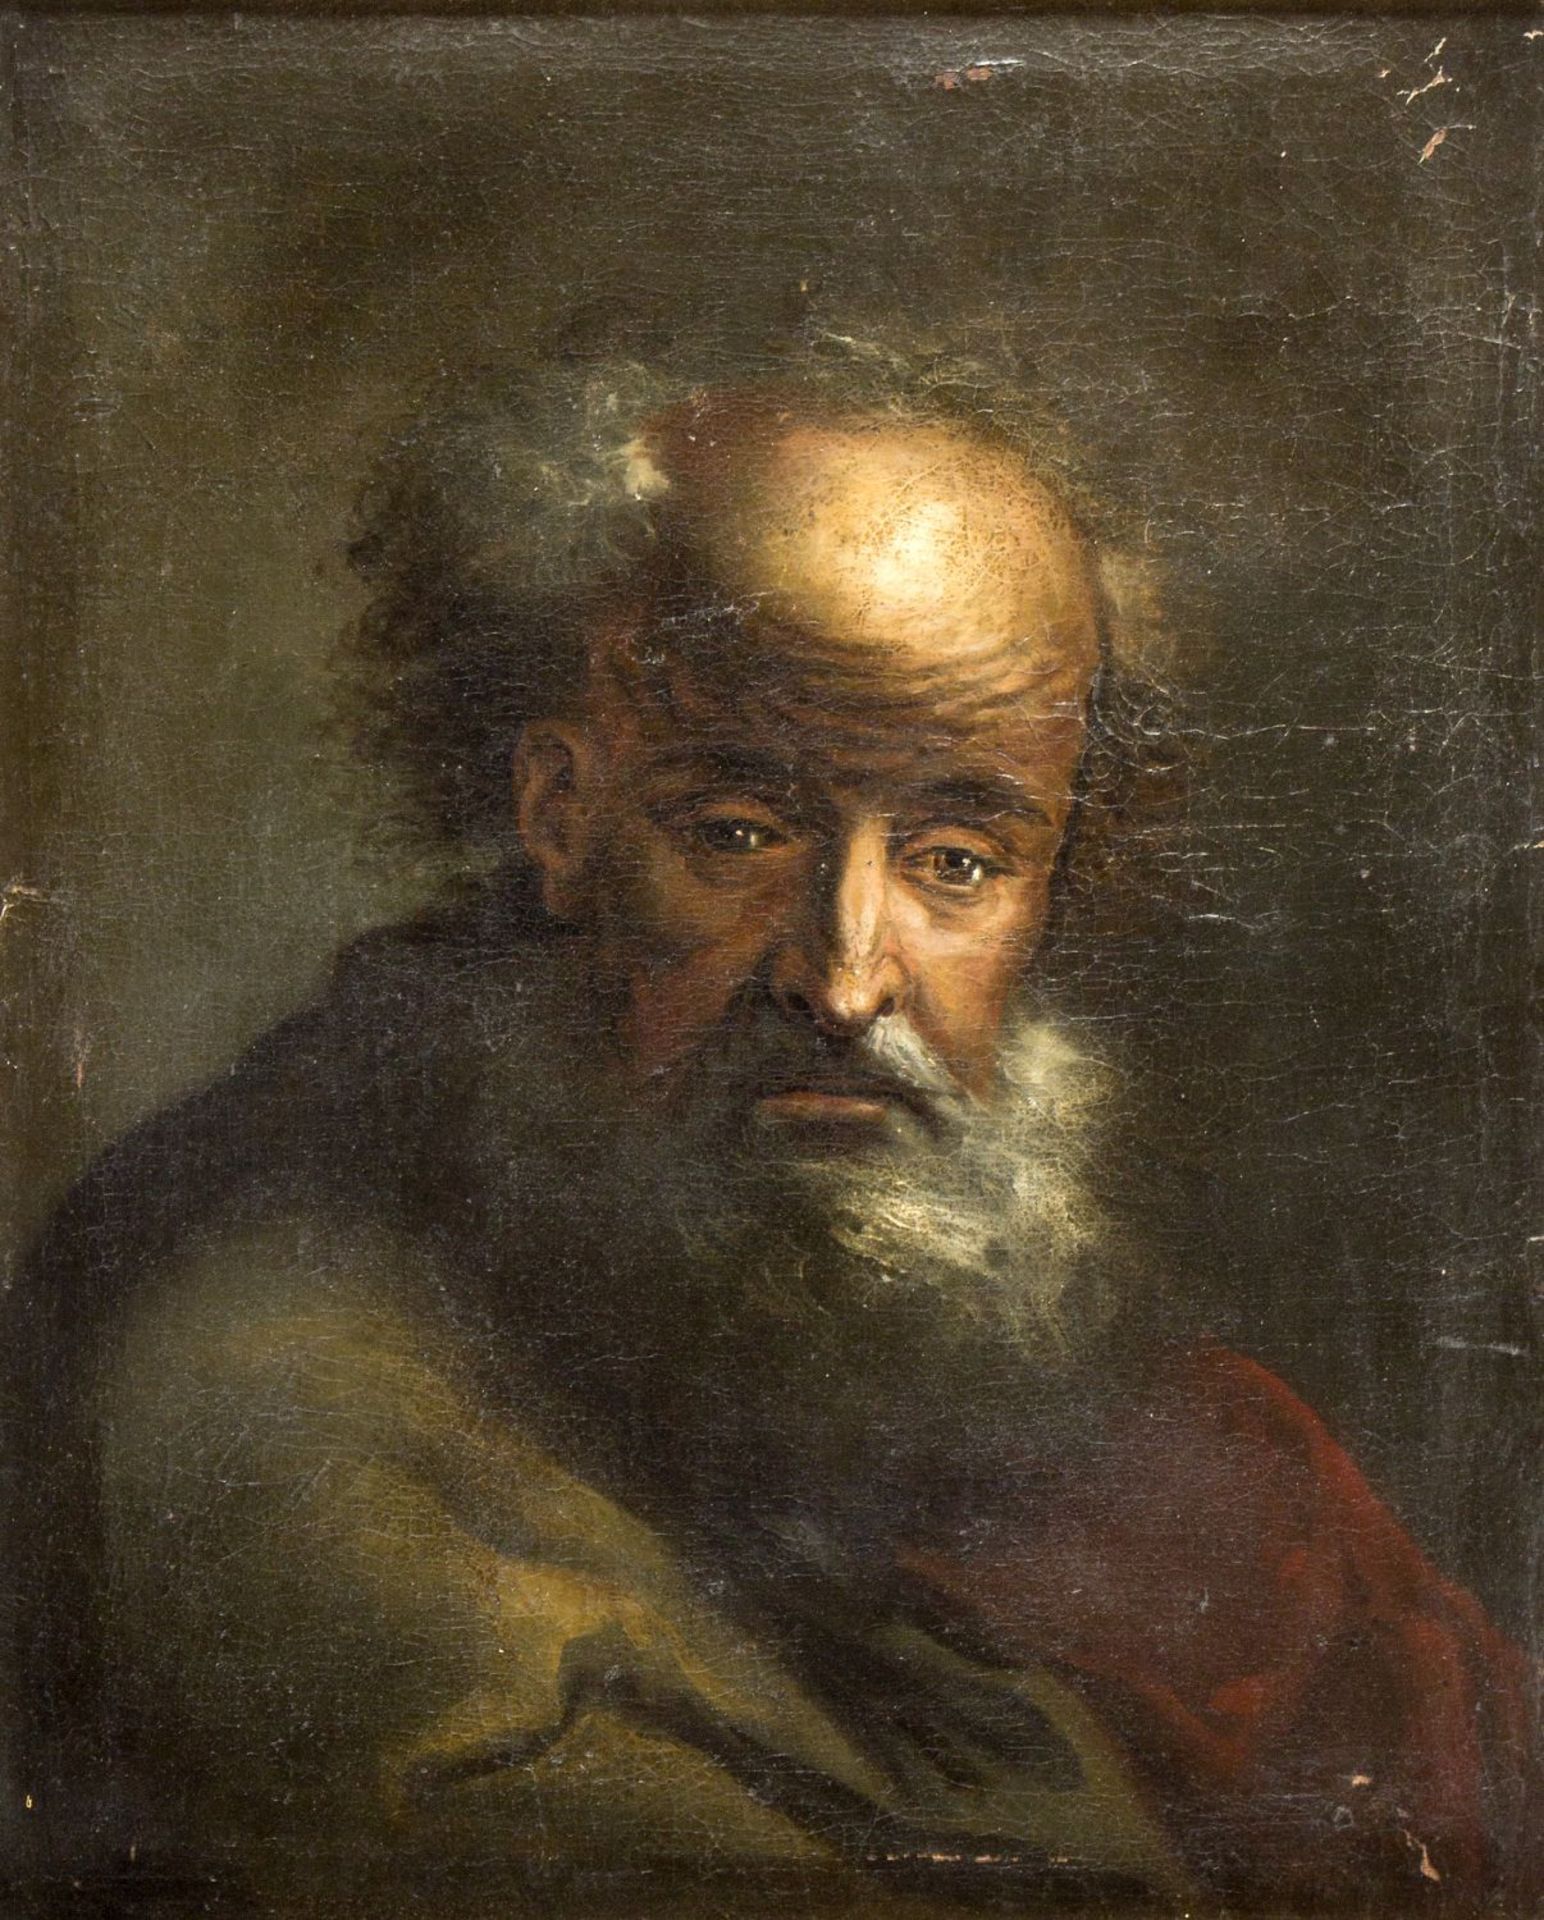 Unbekannt, 18. Jh. Portrait eines bärtigen Mannes. Öl/Lwd. 58,5 x 48,5 cm. Auf einem neuen Keilrahme